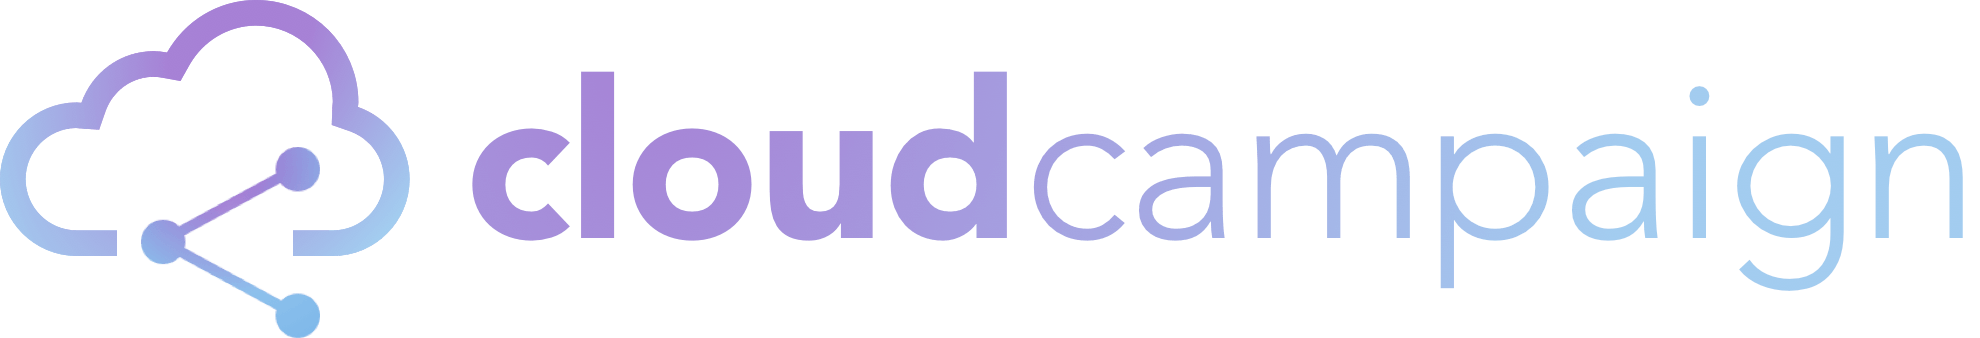 Fade Cloud Logo - Cloud Campaign - Social Media Marketing for Agencies